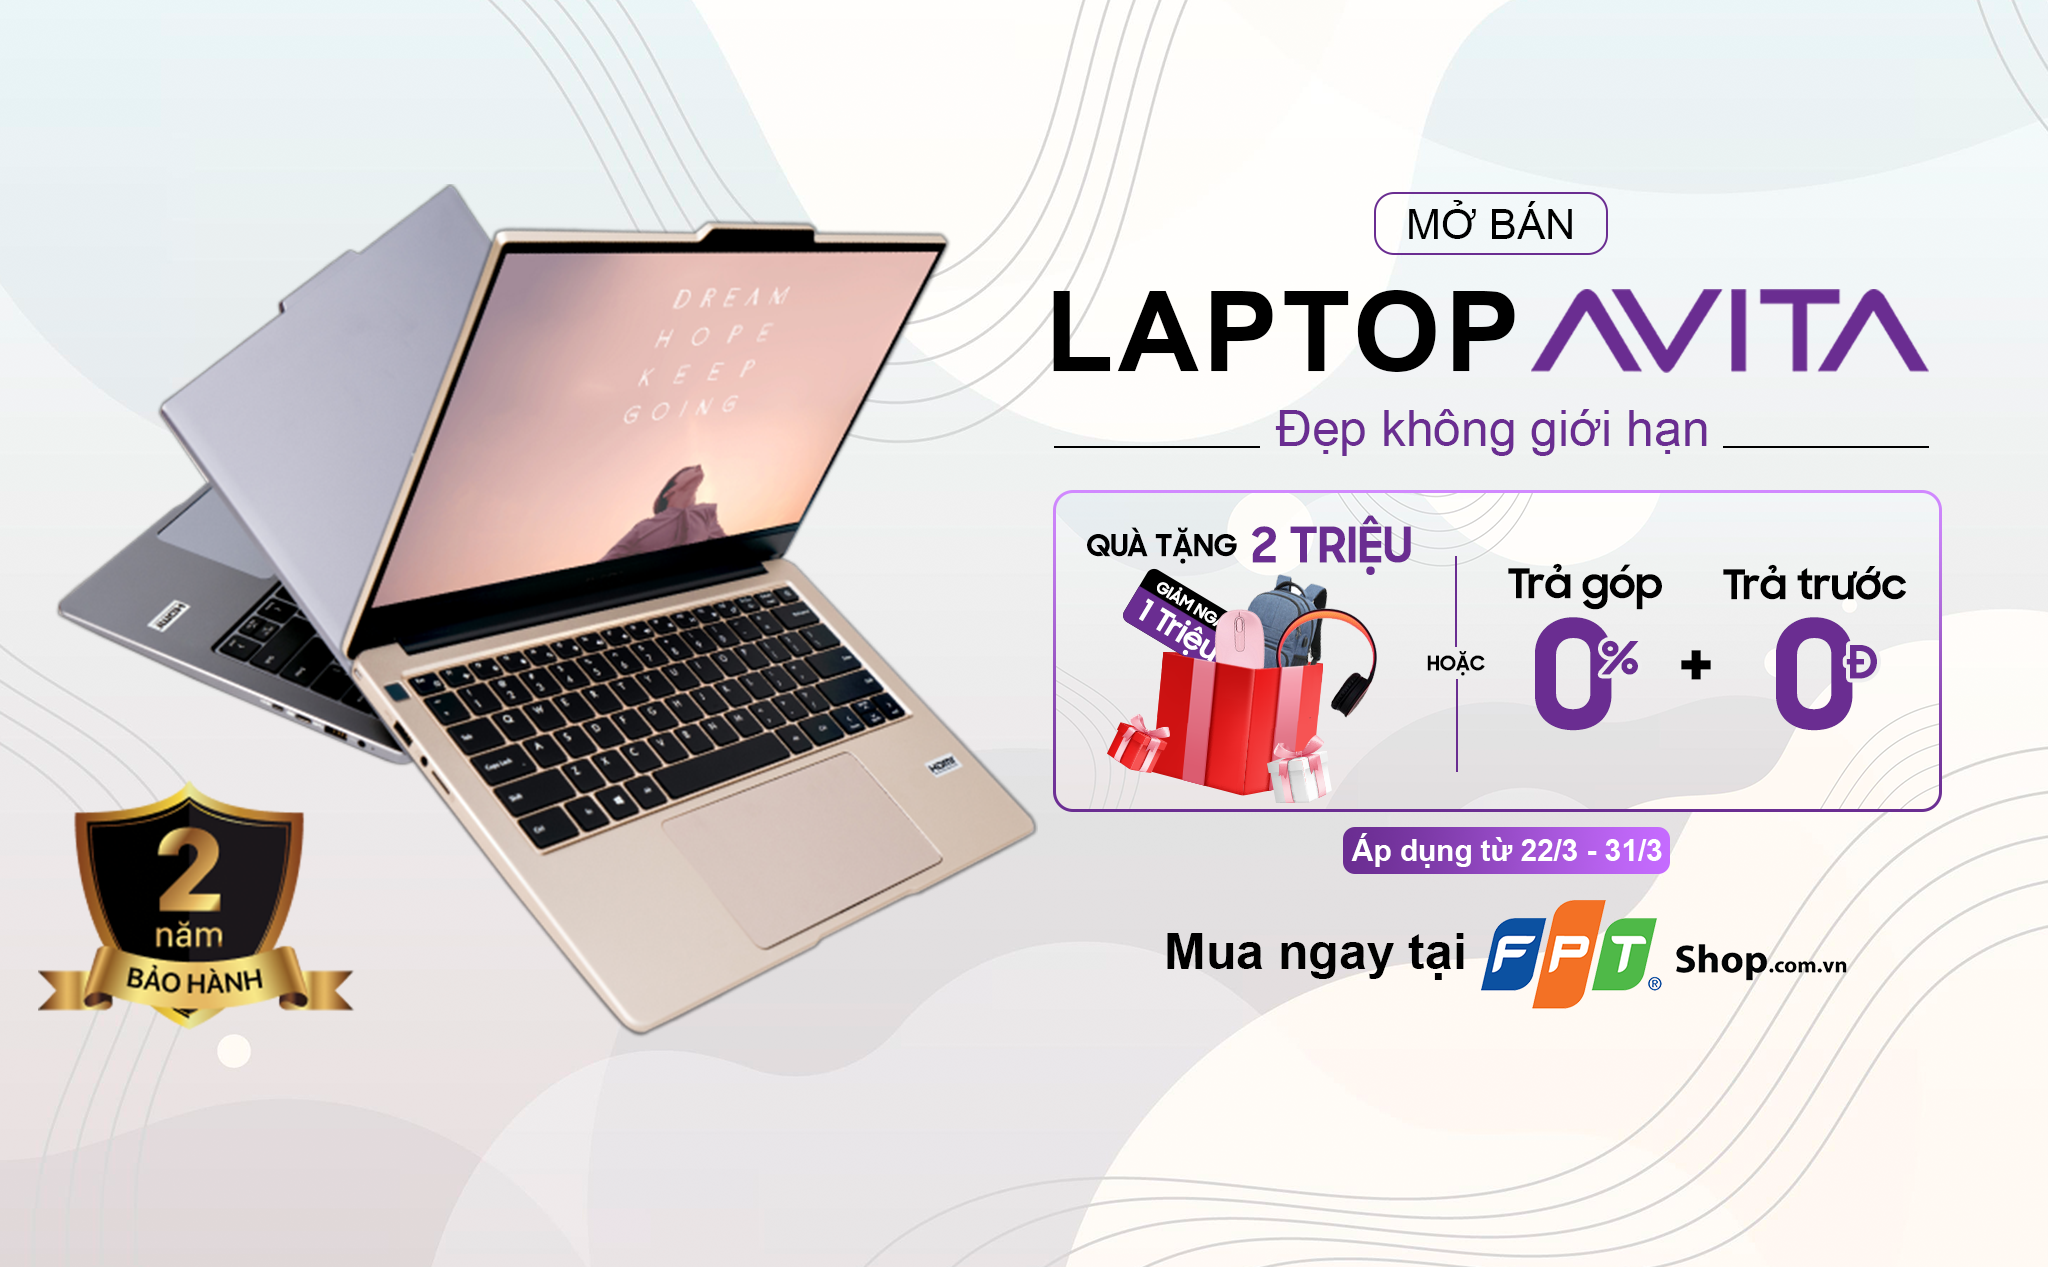 [QC] Avita "anh em một nhà" với laptop VAIO chính thức lên kệ tại FPT Shop